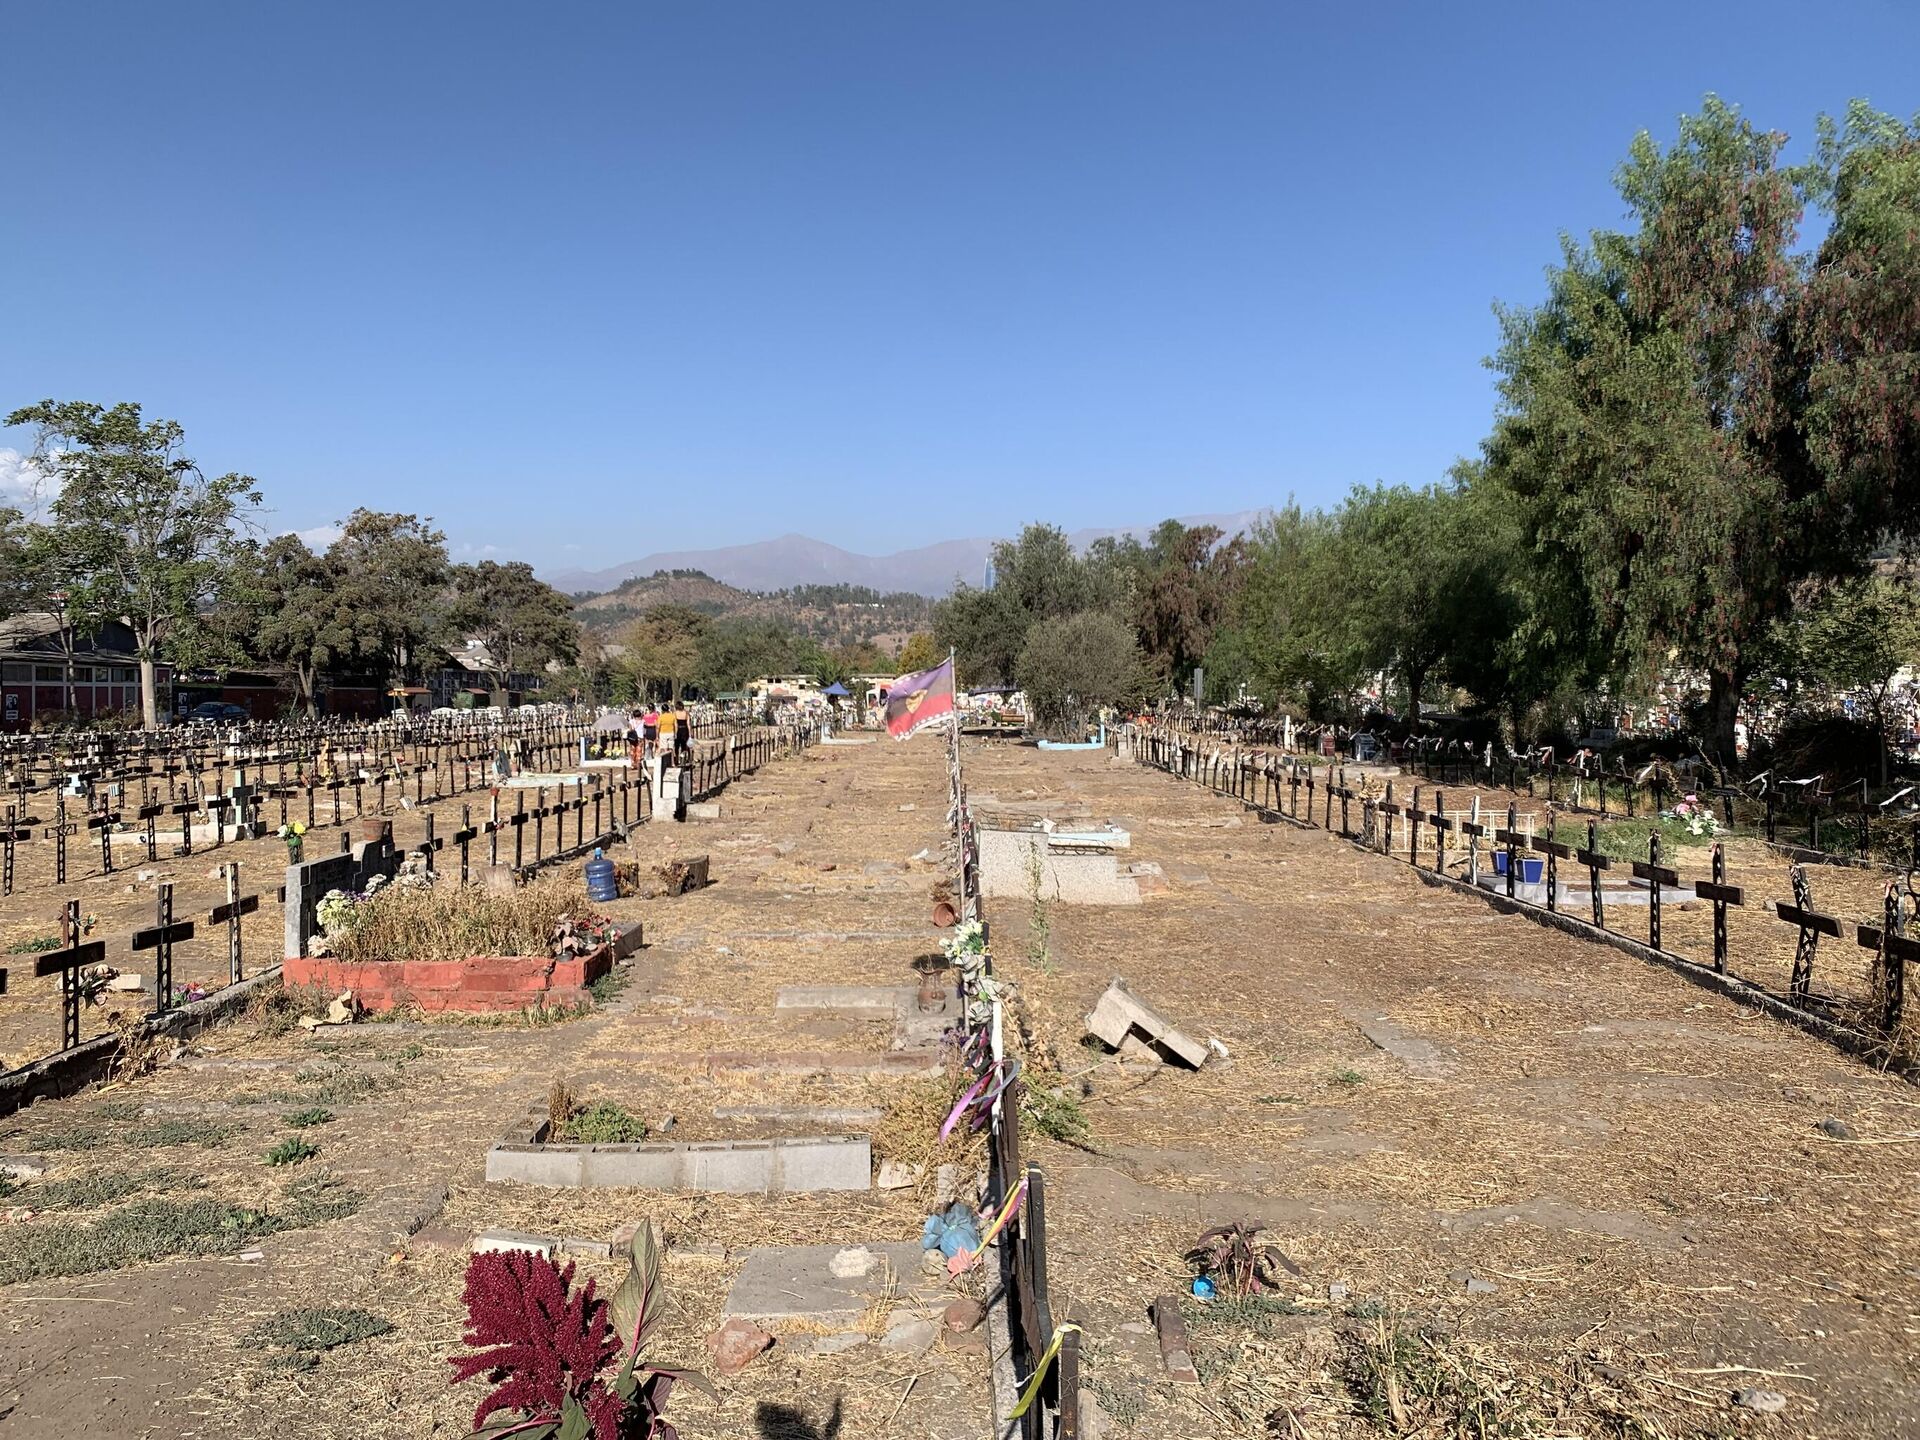 El Patio 29, sector del Cementerio General de Santiago de Chile que guarda los restos de desaparecidos enterrados clandestinamente por la dictadura de Pinochet  - Sputnik Mundo, 1920, 09.03.2023